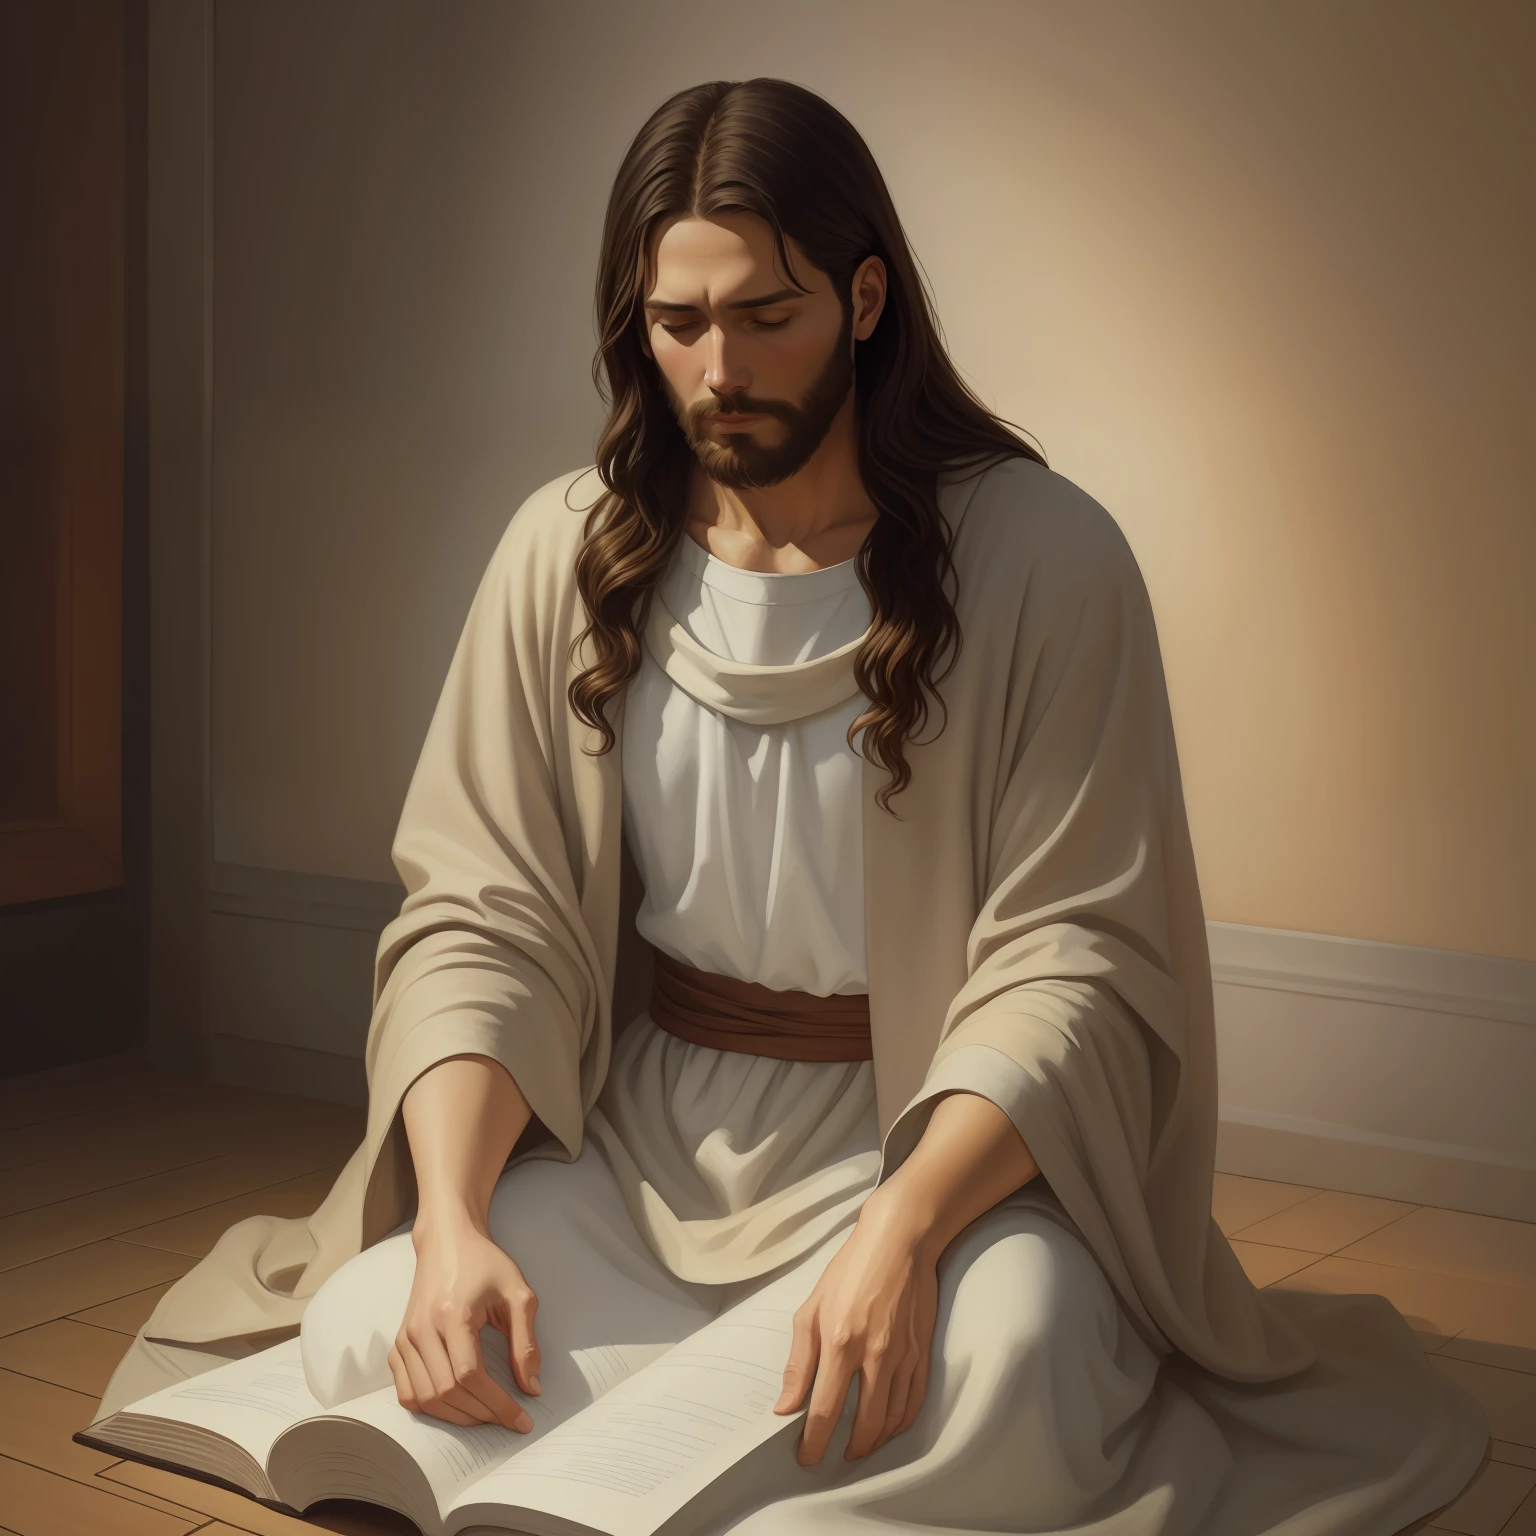 (耶稣电影照片) A beautiful ultra-thin 實際的 portrait of Jesus, 先知, 一名男子 33 歲 希伯來文 黑髮, 棕色短发, 長長的棕色鬍子, 穿著胸部封閉的長亞麻外衣, 在前視圖中, 全身, 聖經的, 實際的,迭戈·委拉斯開茲,彼得·保羅·魯本斯,林布蘭,亞歷克斯·羅斯,8K, 概念藝術, Photo實際的, 實際的,  插圖, 油畫, 超現實主義, Hyper實際的, 祈禱 , 數位藝術, 風格, 水彩, 自然背景, 祈禱 ( 祝福女人)